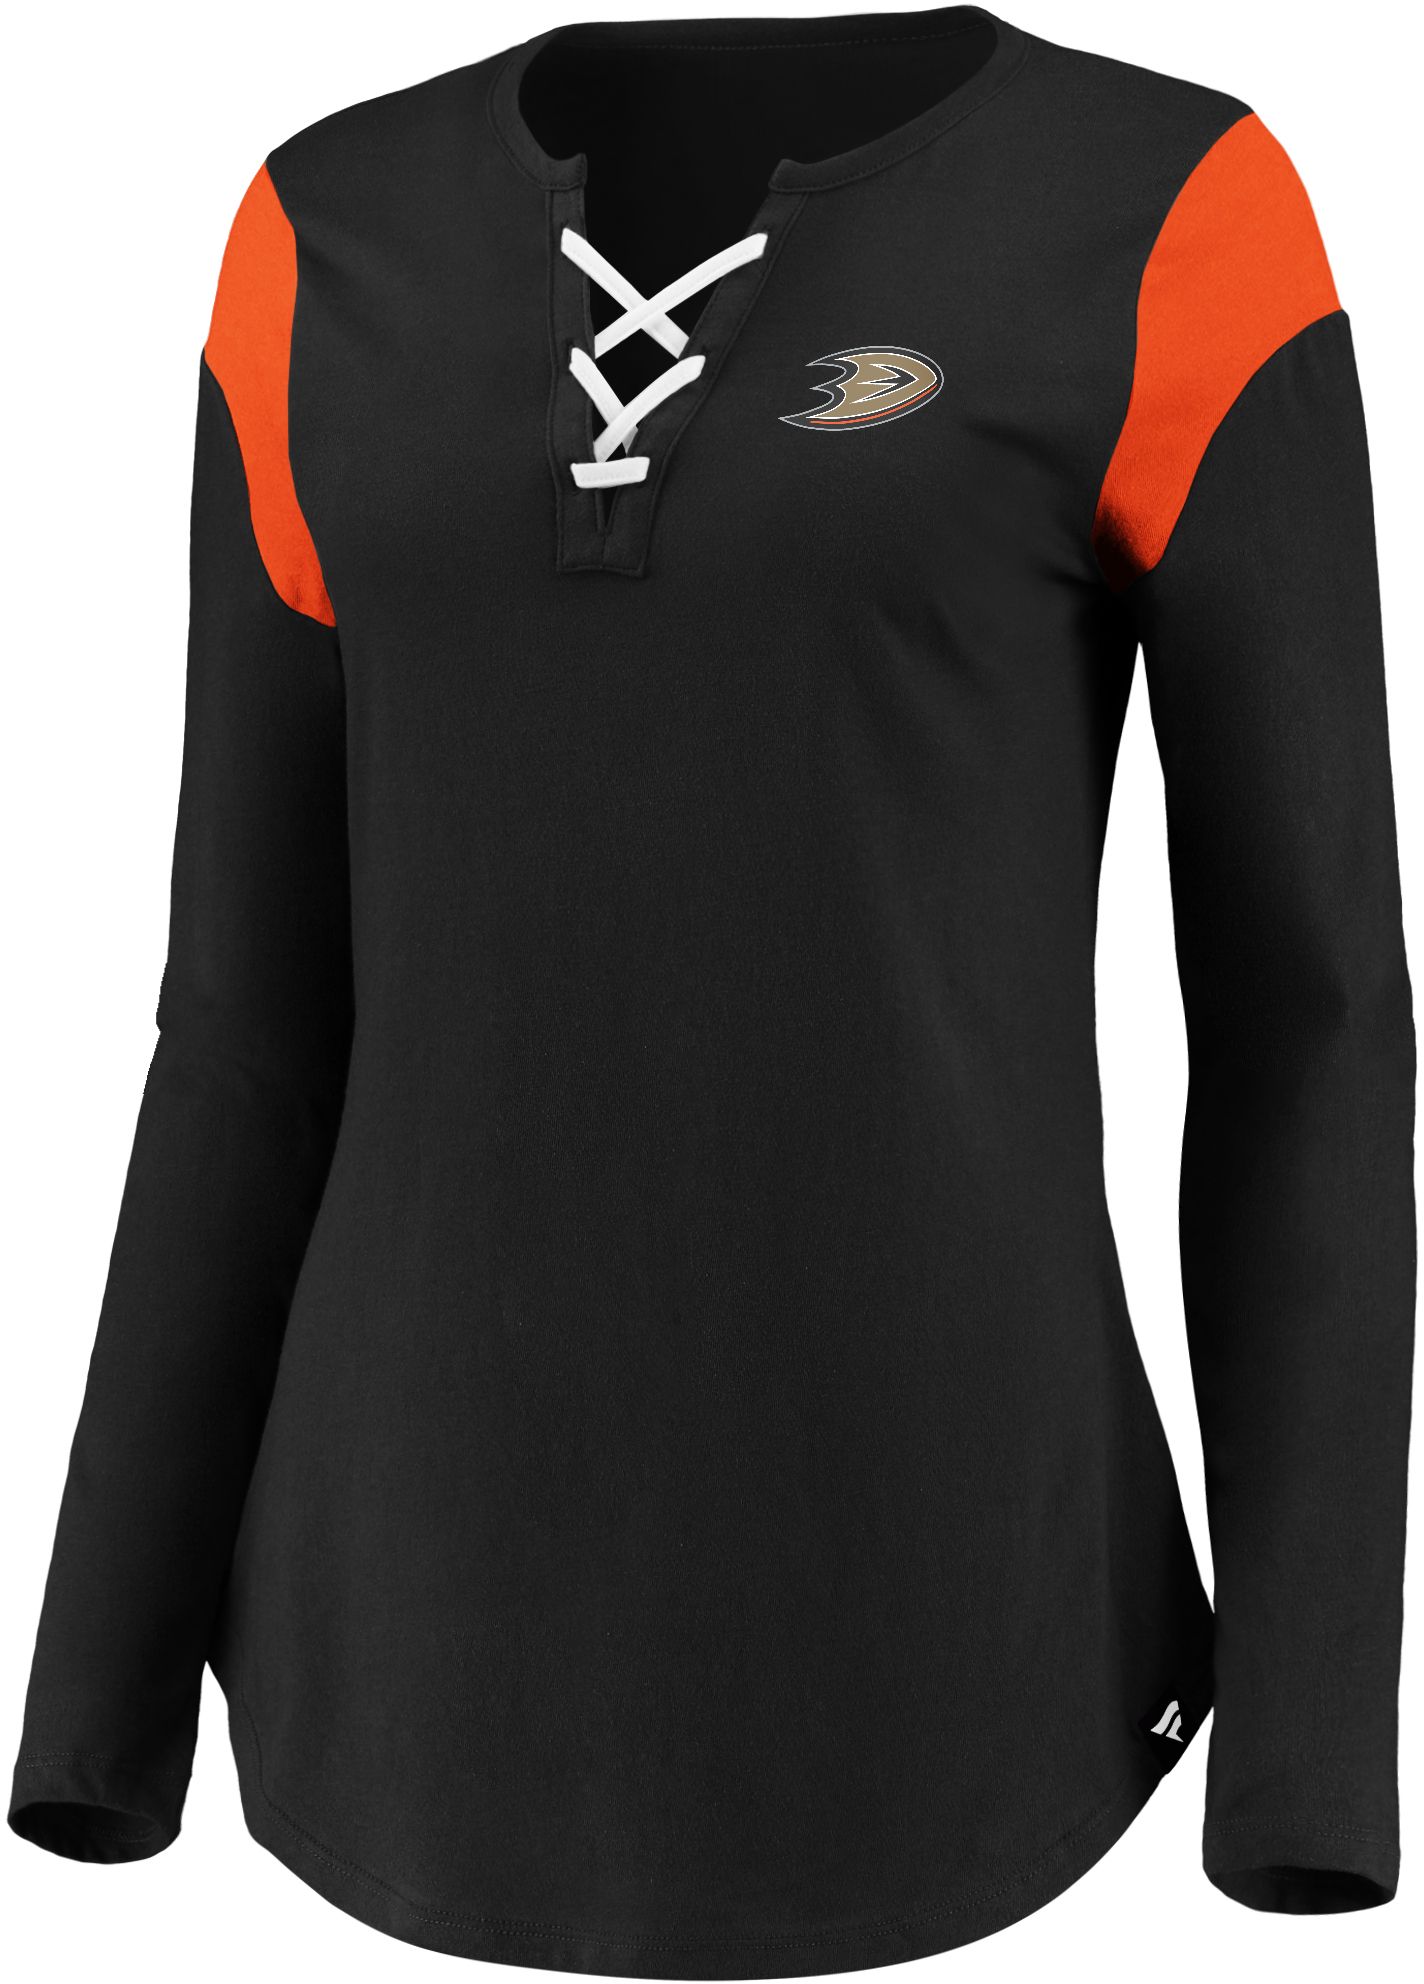 anaheim ducks women's jersey